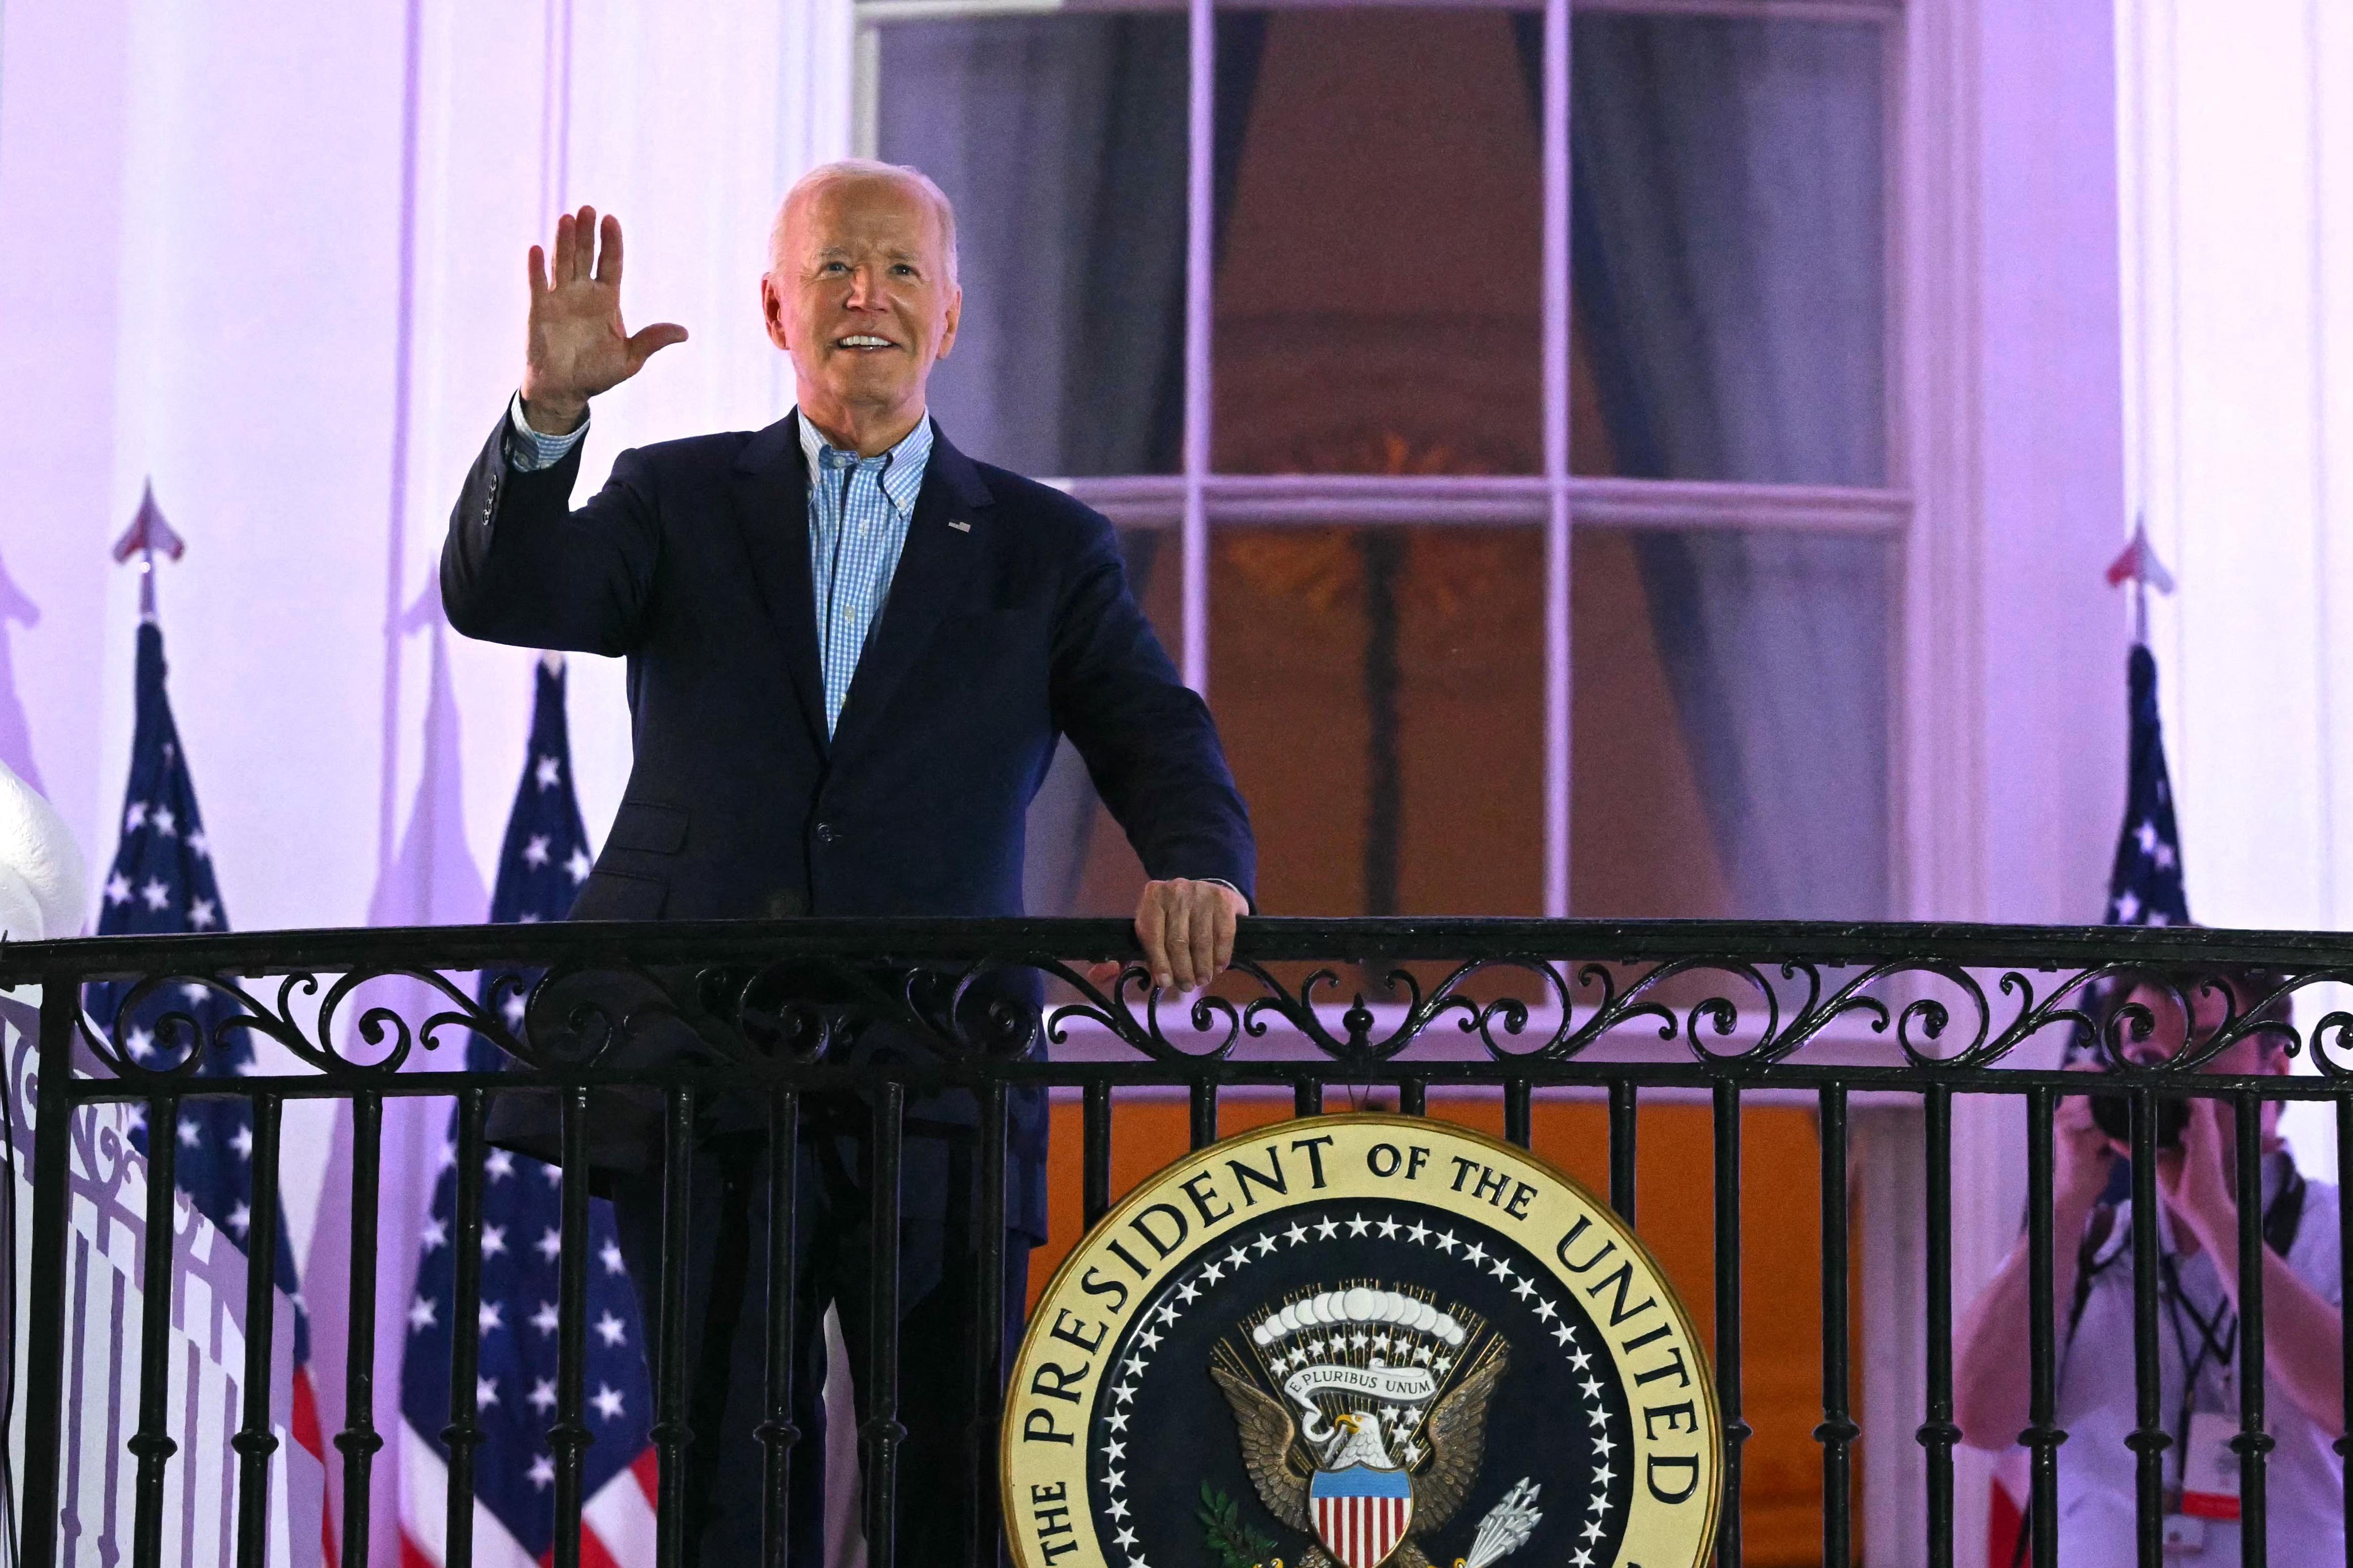 Elezioni Usa - W - Post: Biden rafforza sua candidatura - arginate defezioni tra i Dem